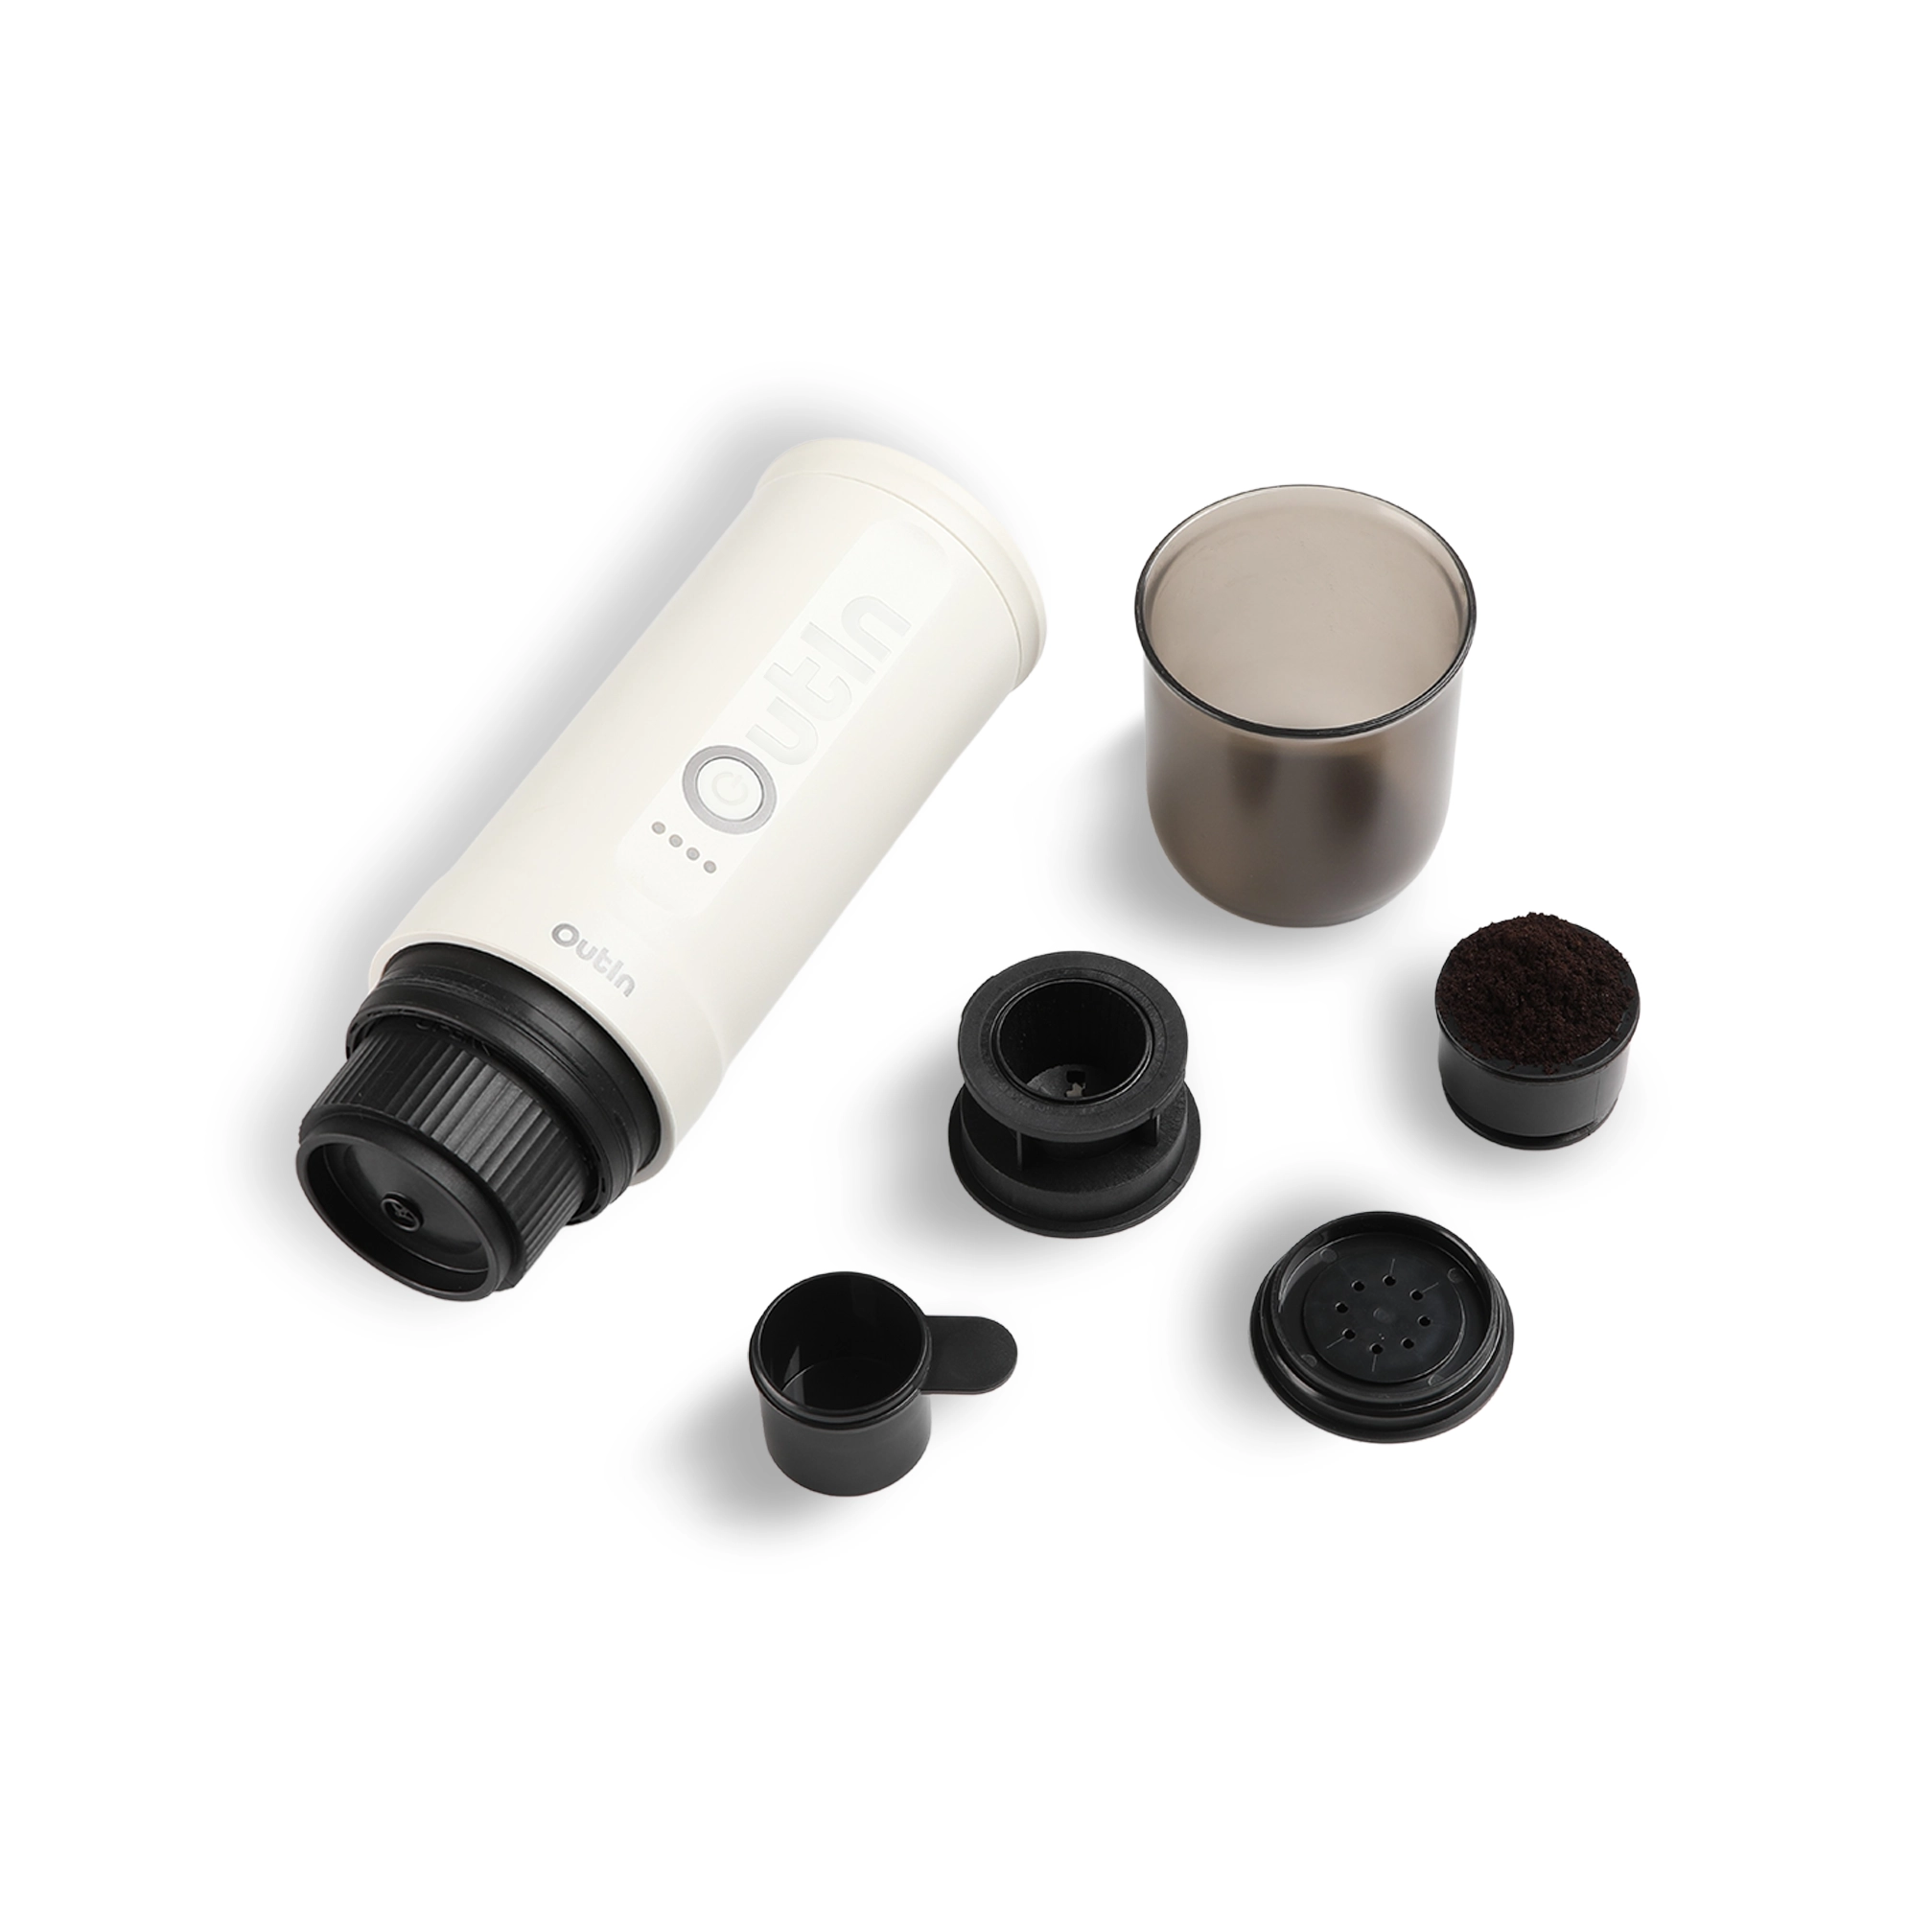 Find Your favorite Outin Nano Portable Espresso Maker today